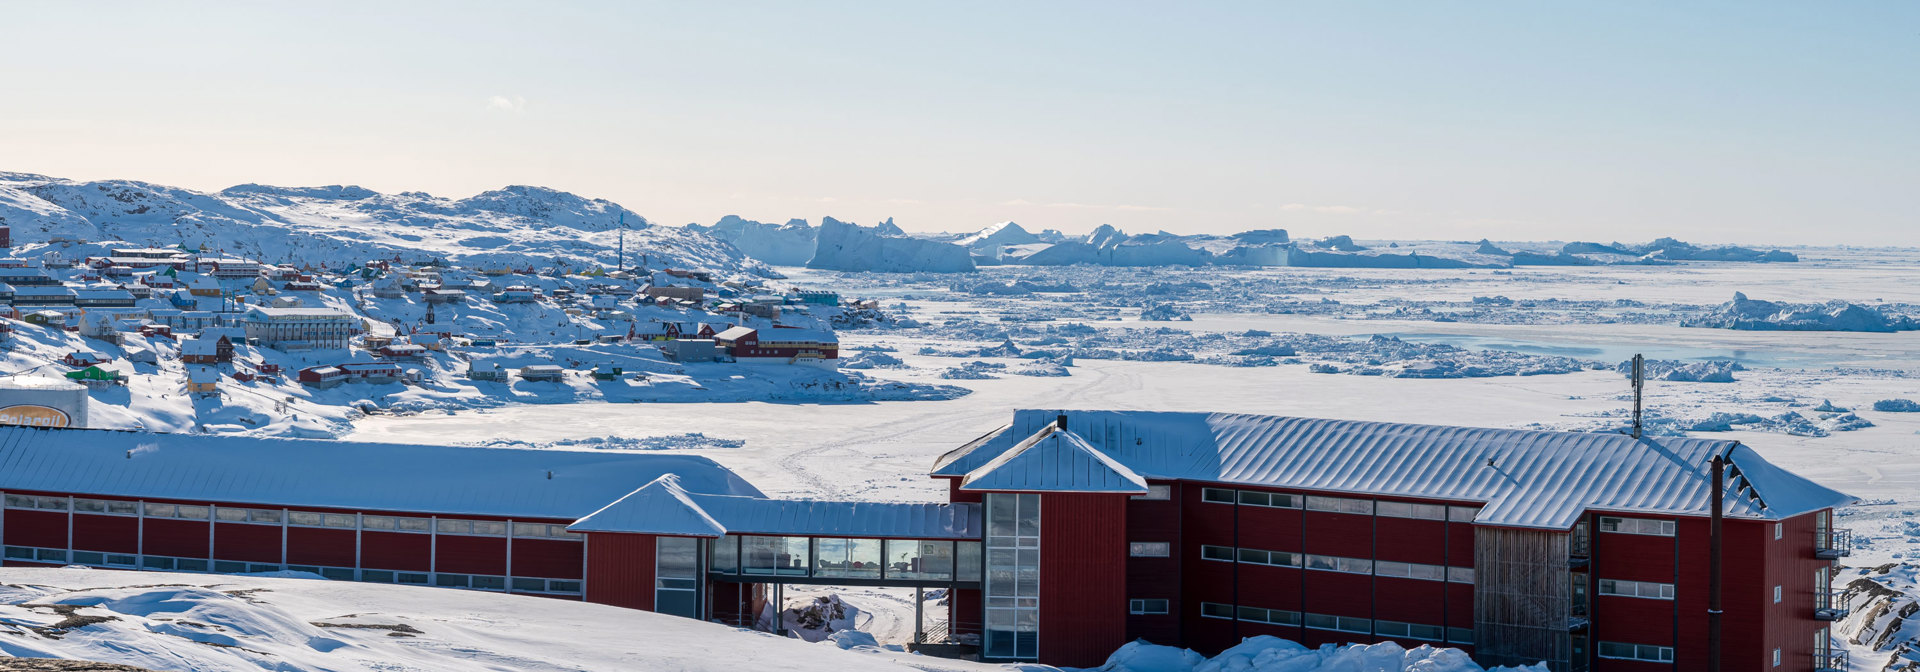 Ilulissat_hotel arctic_vinter